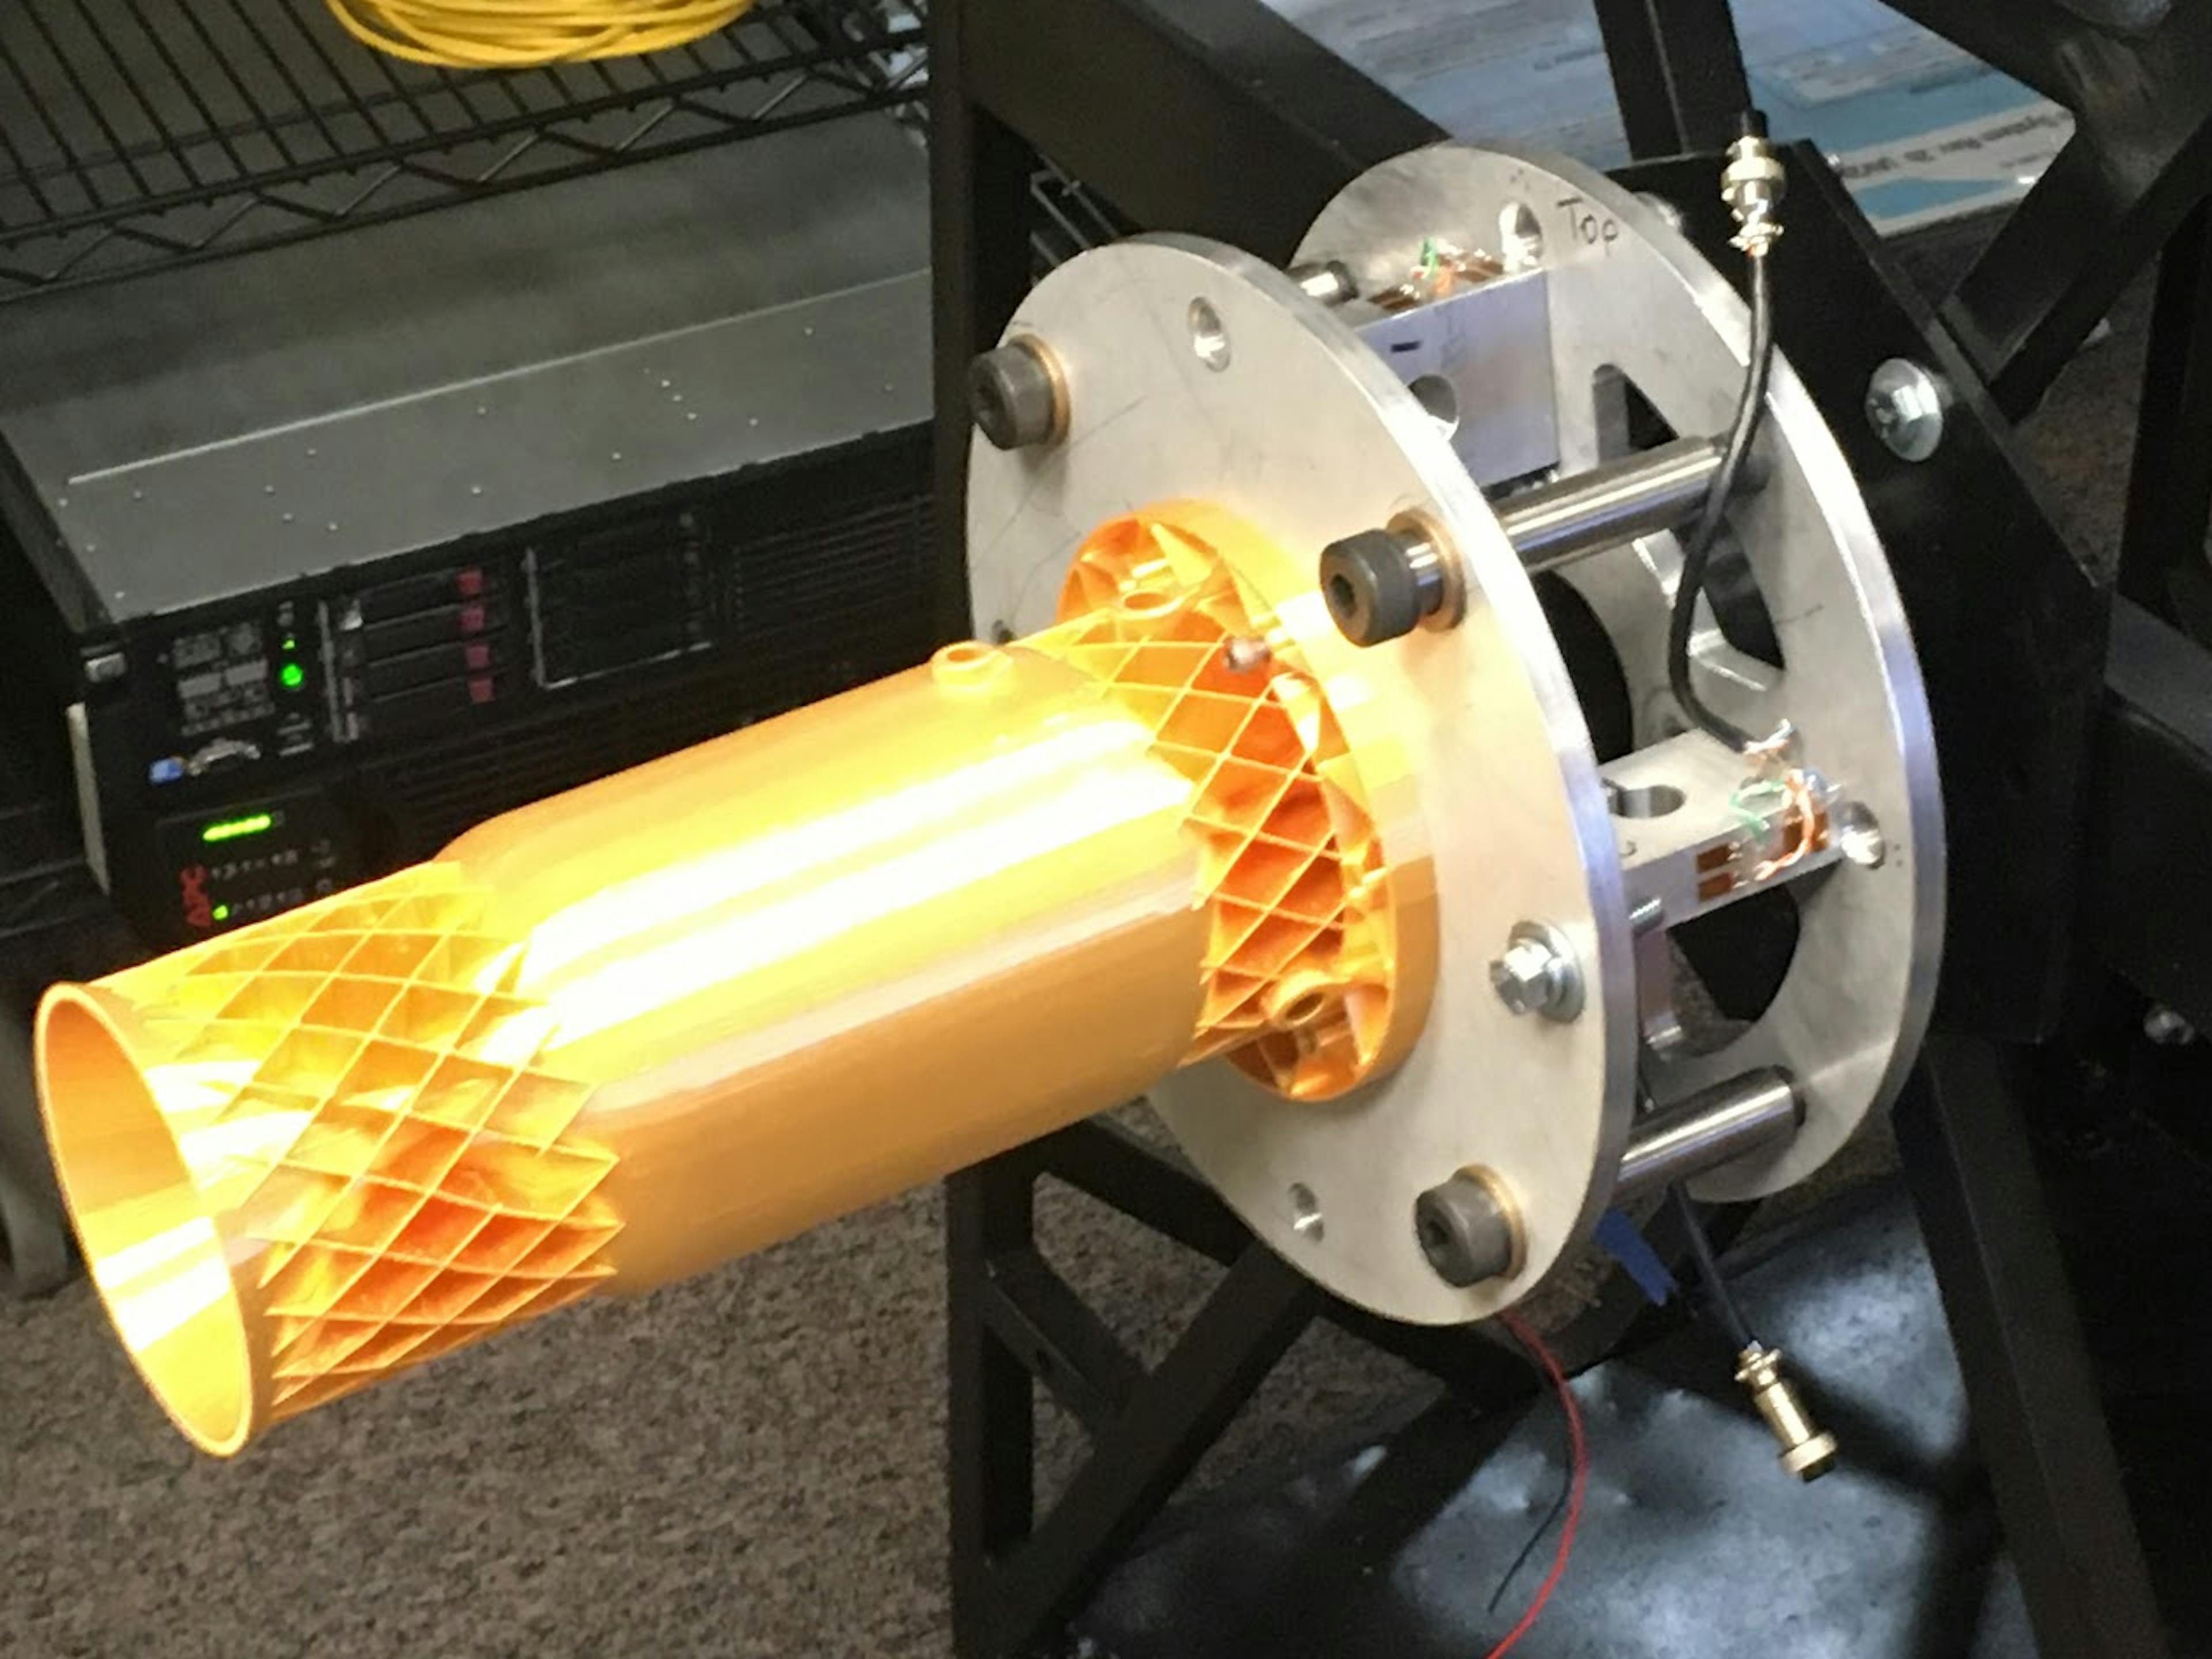 Os alunos de mecânica da PSAS desenvolveram um script Python que gera processualmente modelos CAD para motores de foguetes de alumínio impressos em 3D.